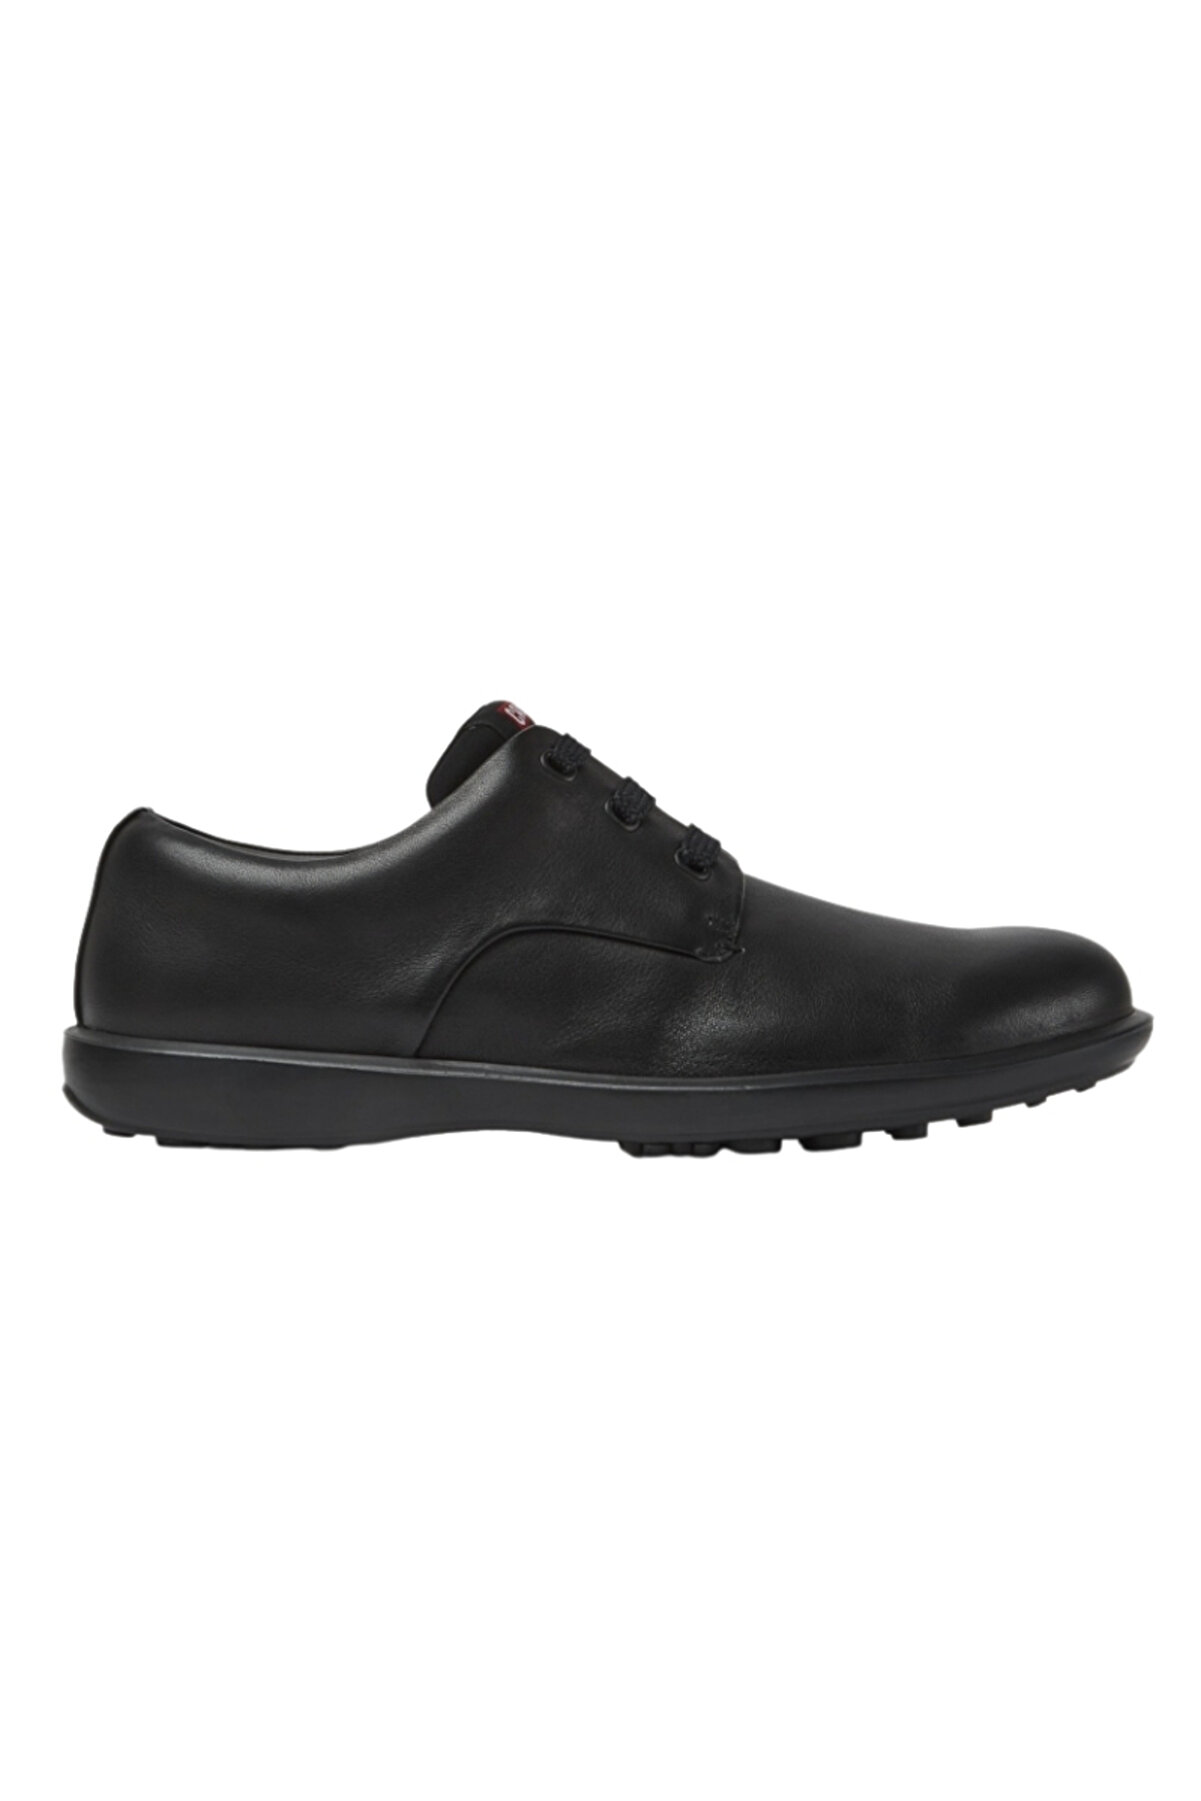 CAMPER Erkek Siyah Casual Ayakkabı 18637-035-siyah